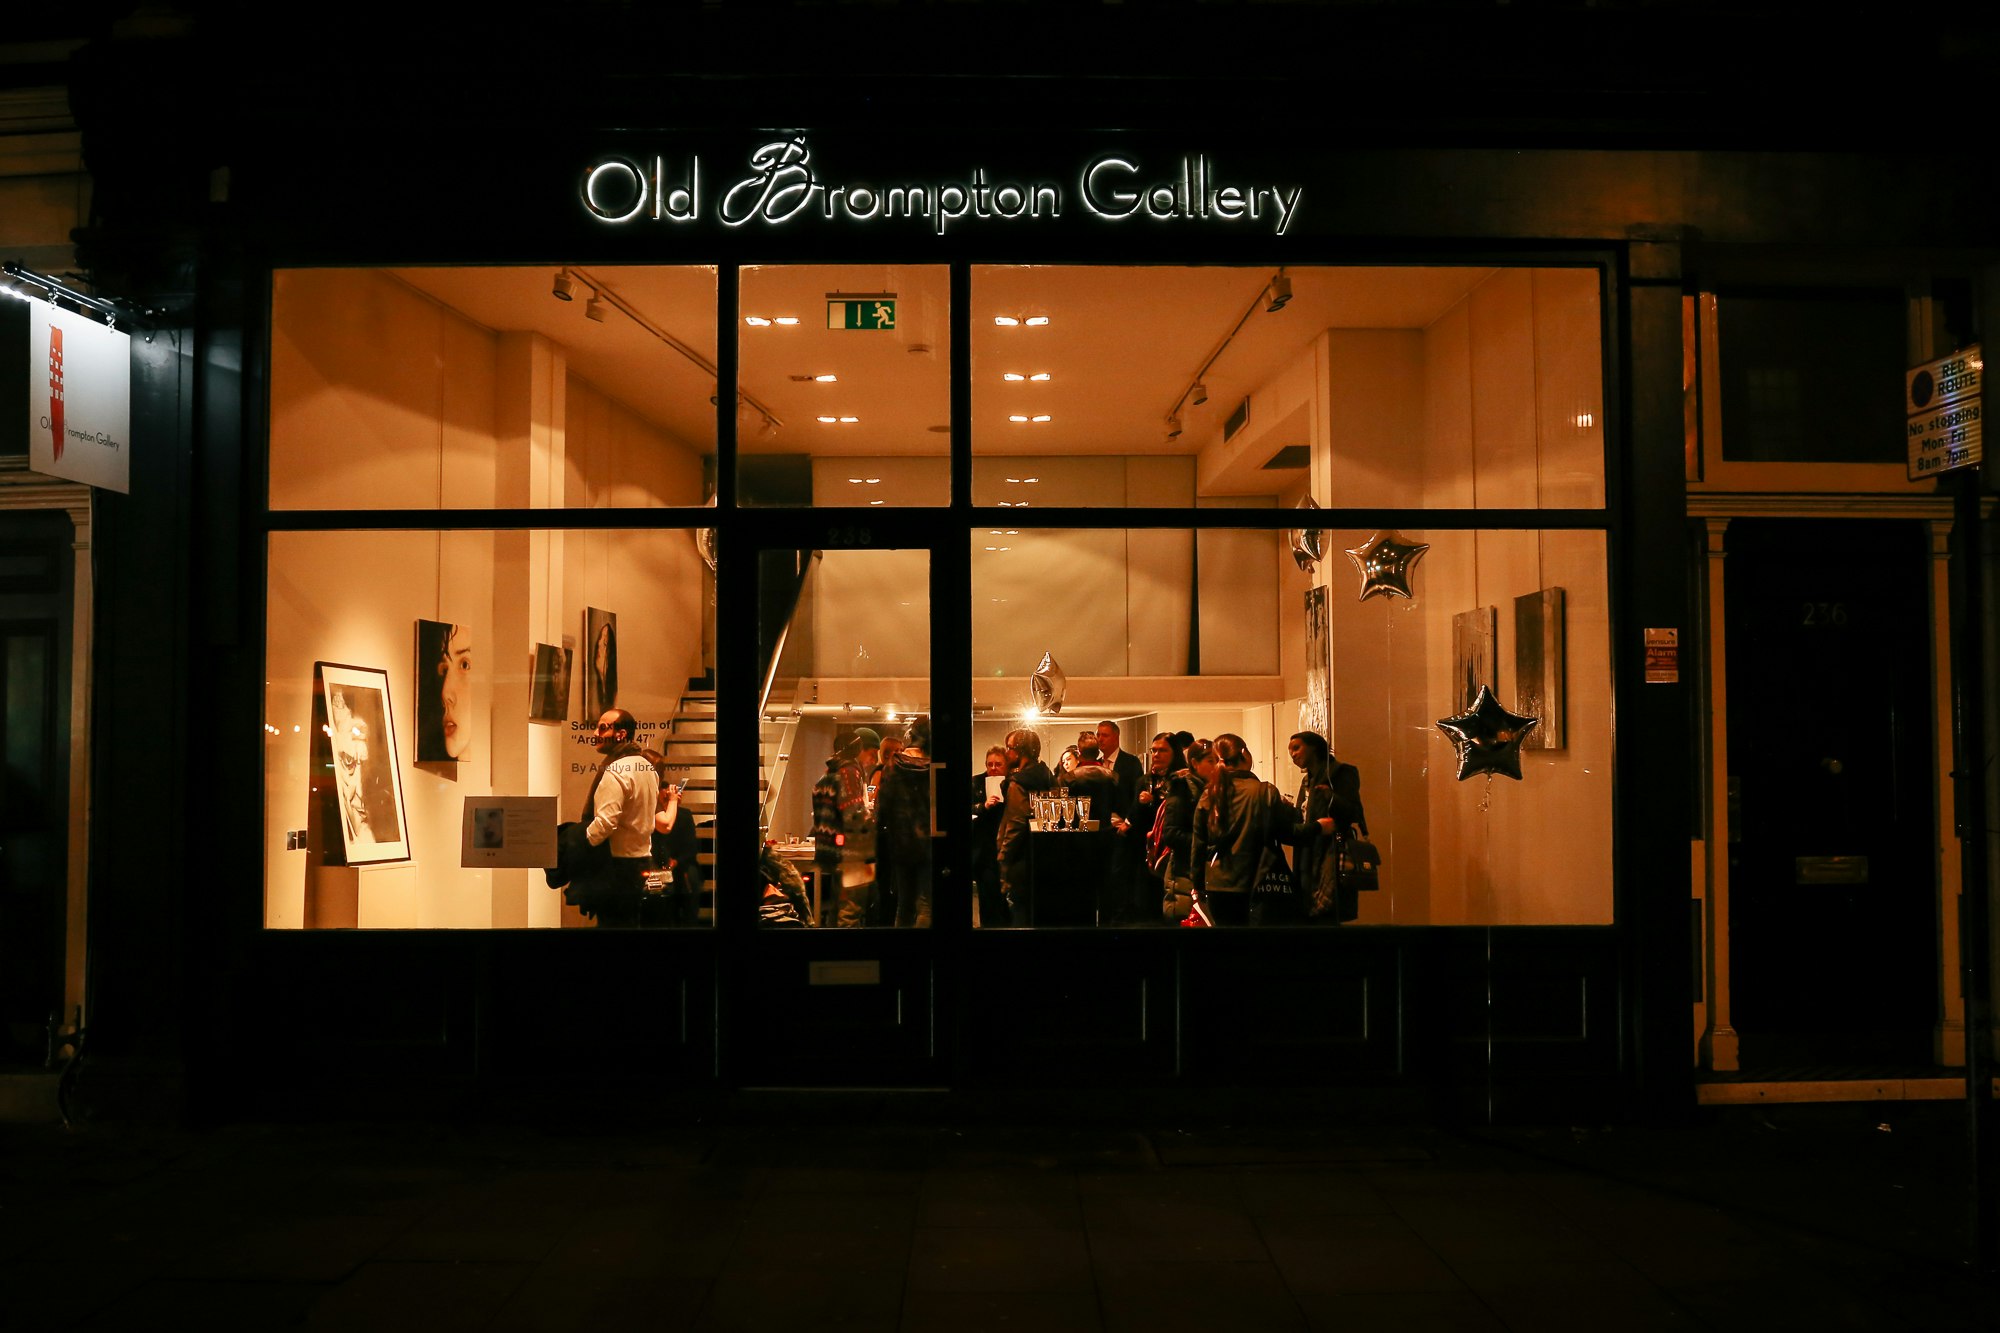 Old Brompton Gallery - Old Brompton Gallery image 1